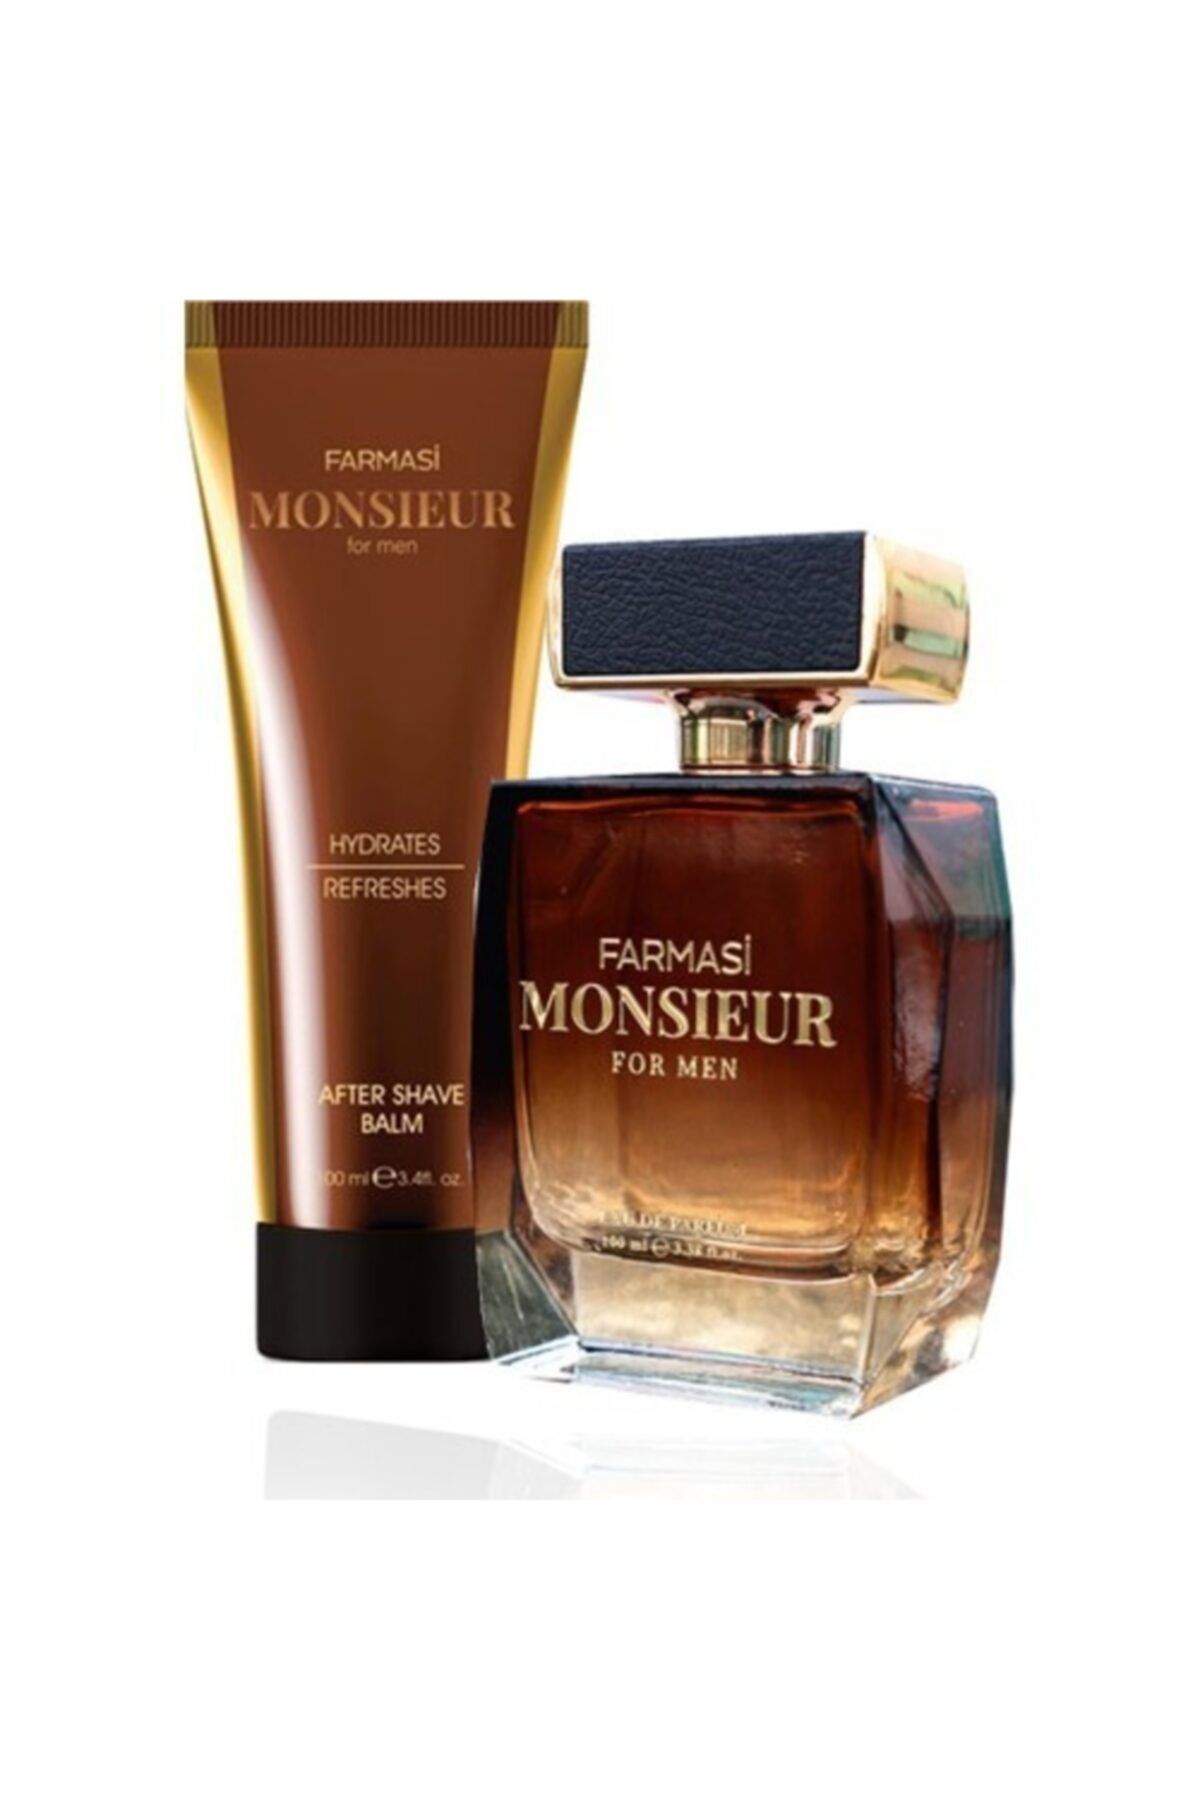 Farmasi Monsieur Erkek Tıraş Sonrası Losyonu ve Monsieur Edp 50 ml Erkek Parfüm